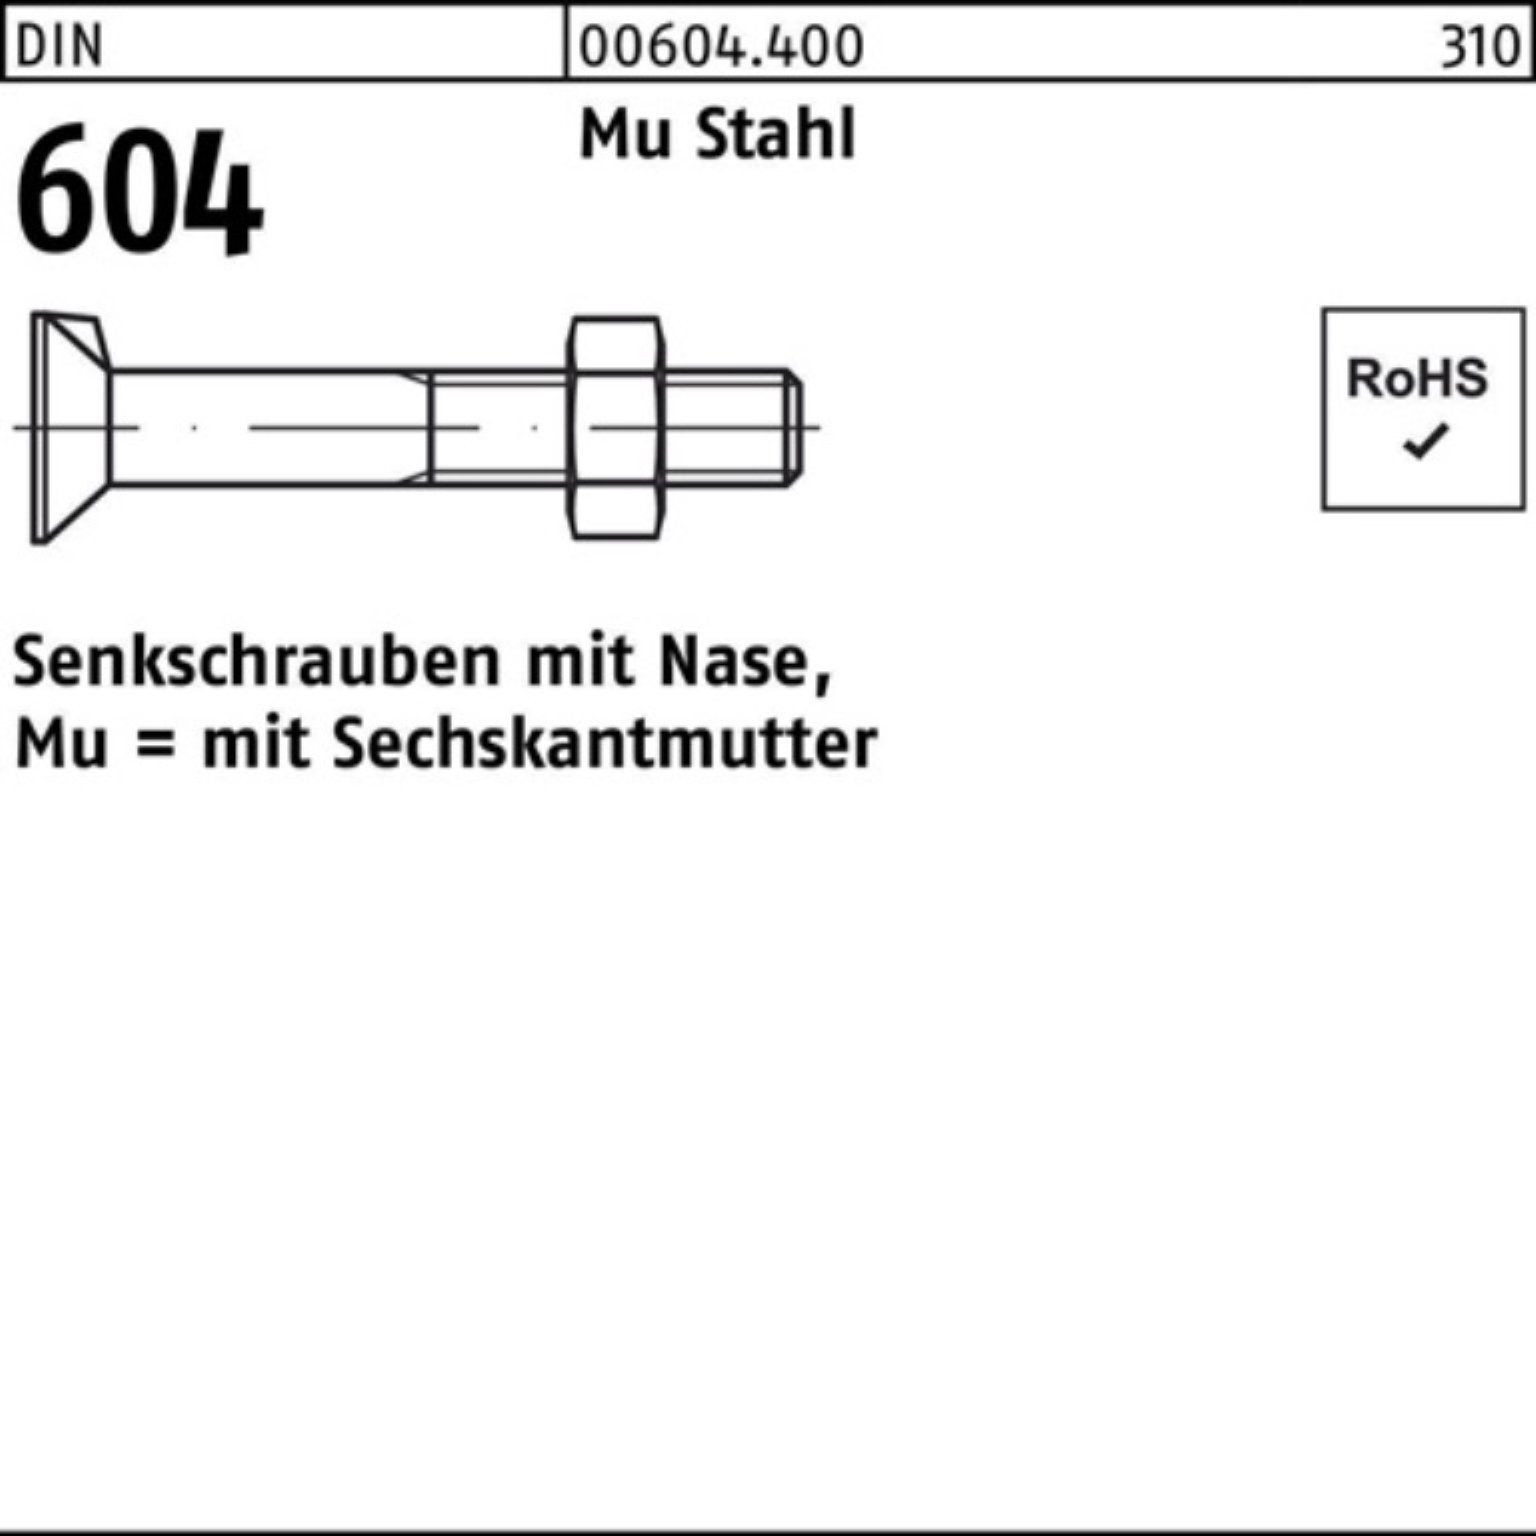 Nase/6-ktmutter Senkschraube Senkschraube DIN Reyher 100er 70 4.6 M16x Mu 2 Pack 604 Stahl